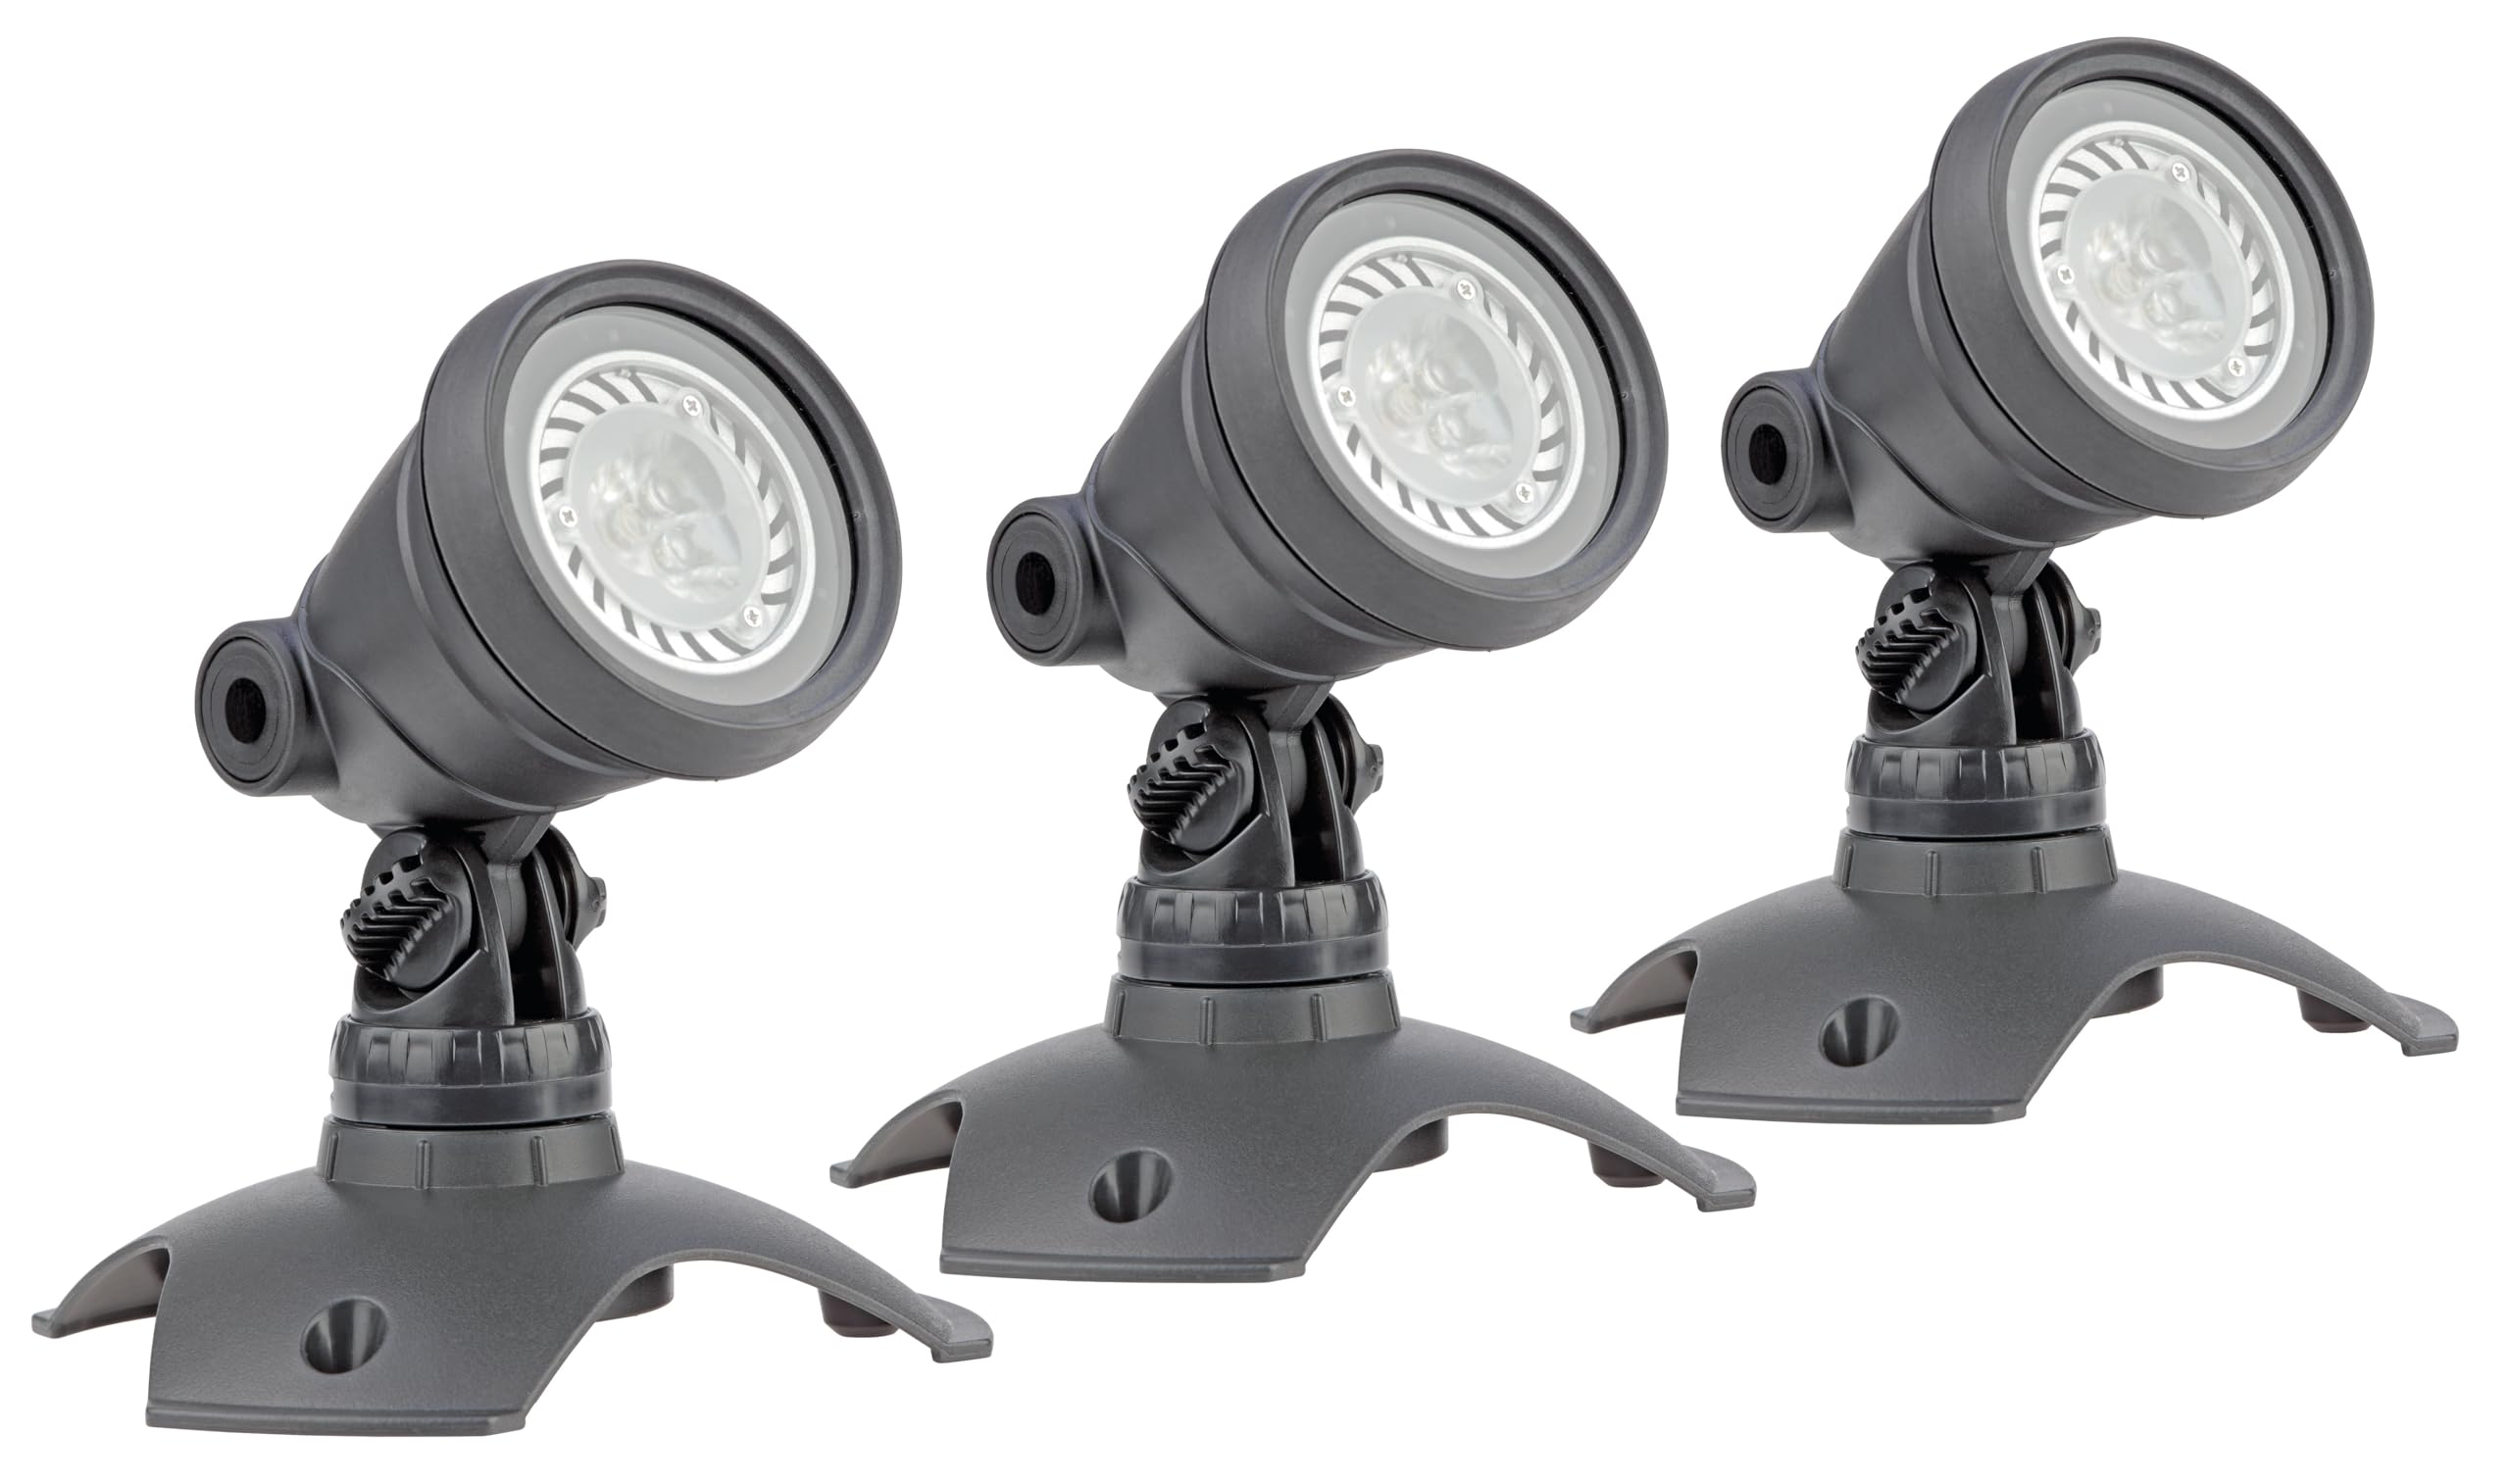 OASE 57035 LunAqua 3 LED Set 3 - Unterwasserbeleuchtung und Gartenbeleuchtung mit warmweißen Lichtakzenten, ideal für Gartenteich, Schwimmteich, Fischteich, Pool, Brunnen und Außenbereich